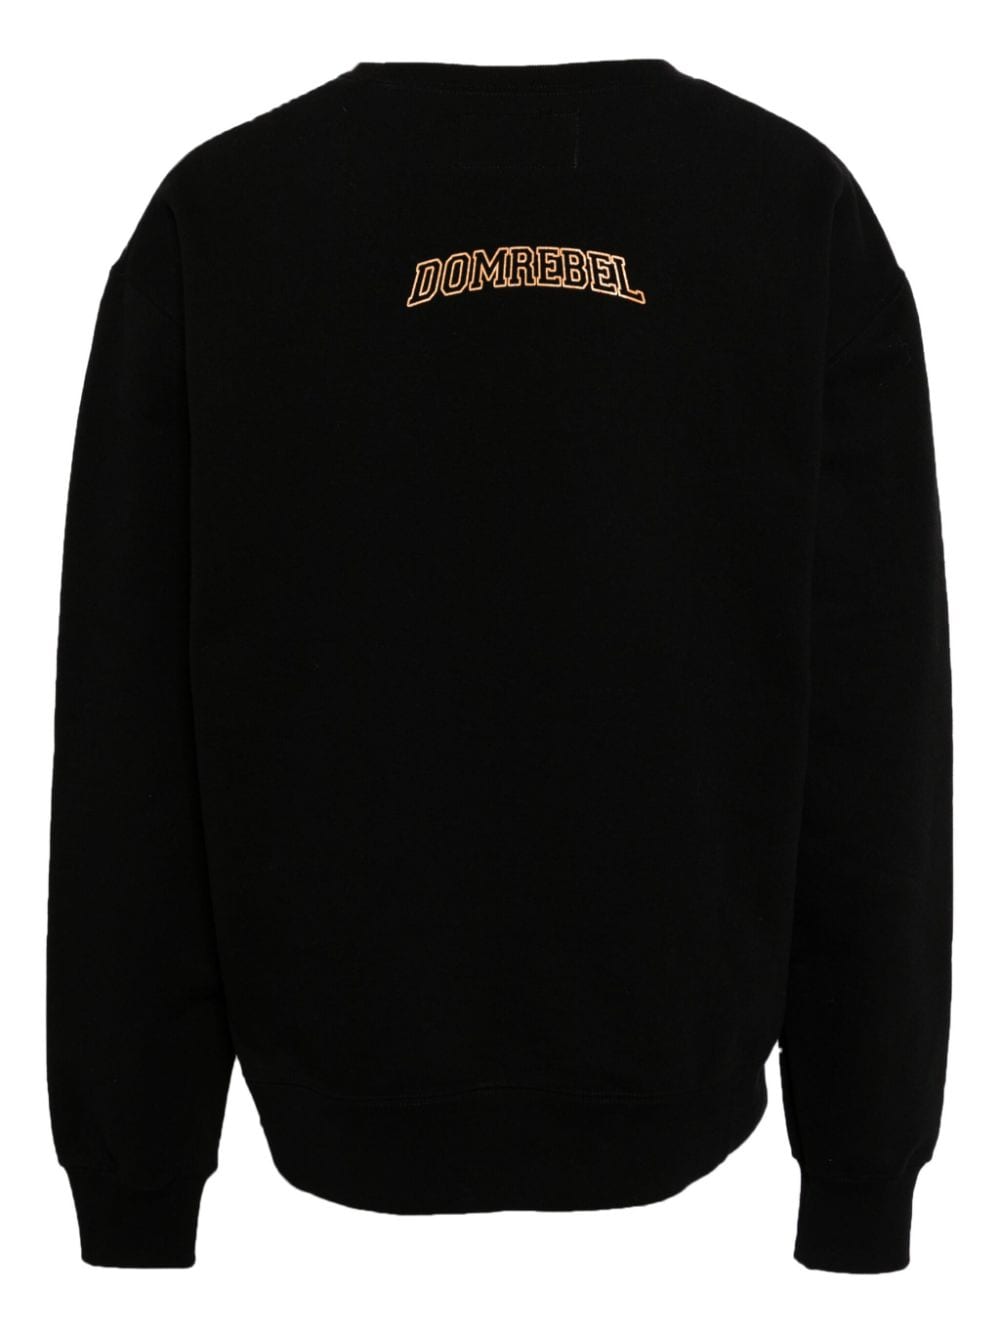 DOMREBEL Katoenen sweater met print - Zwart